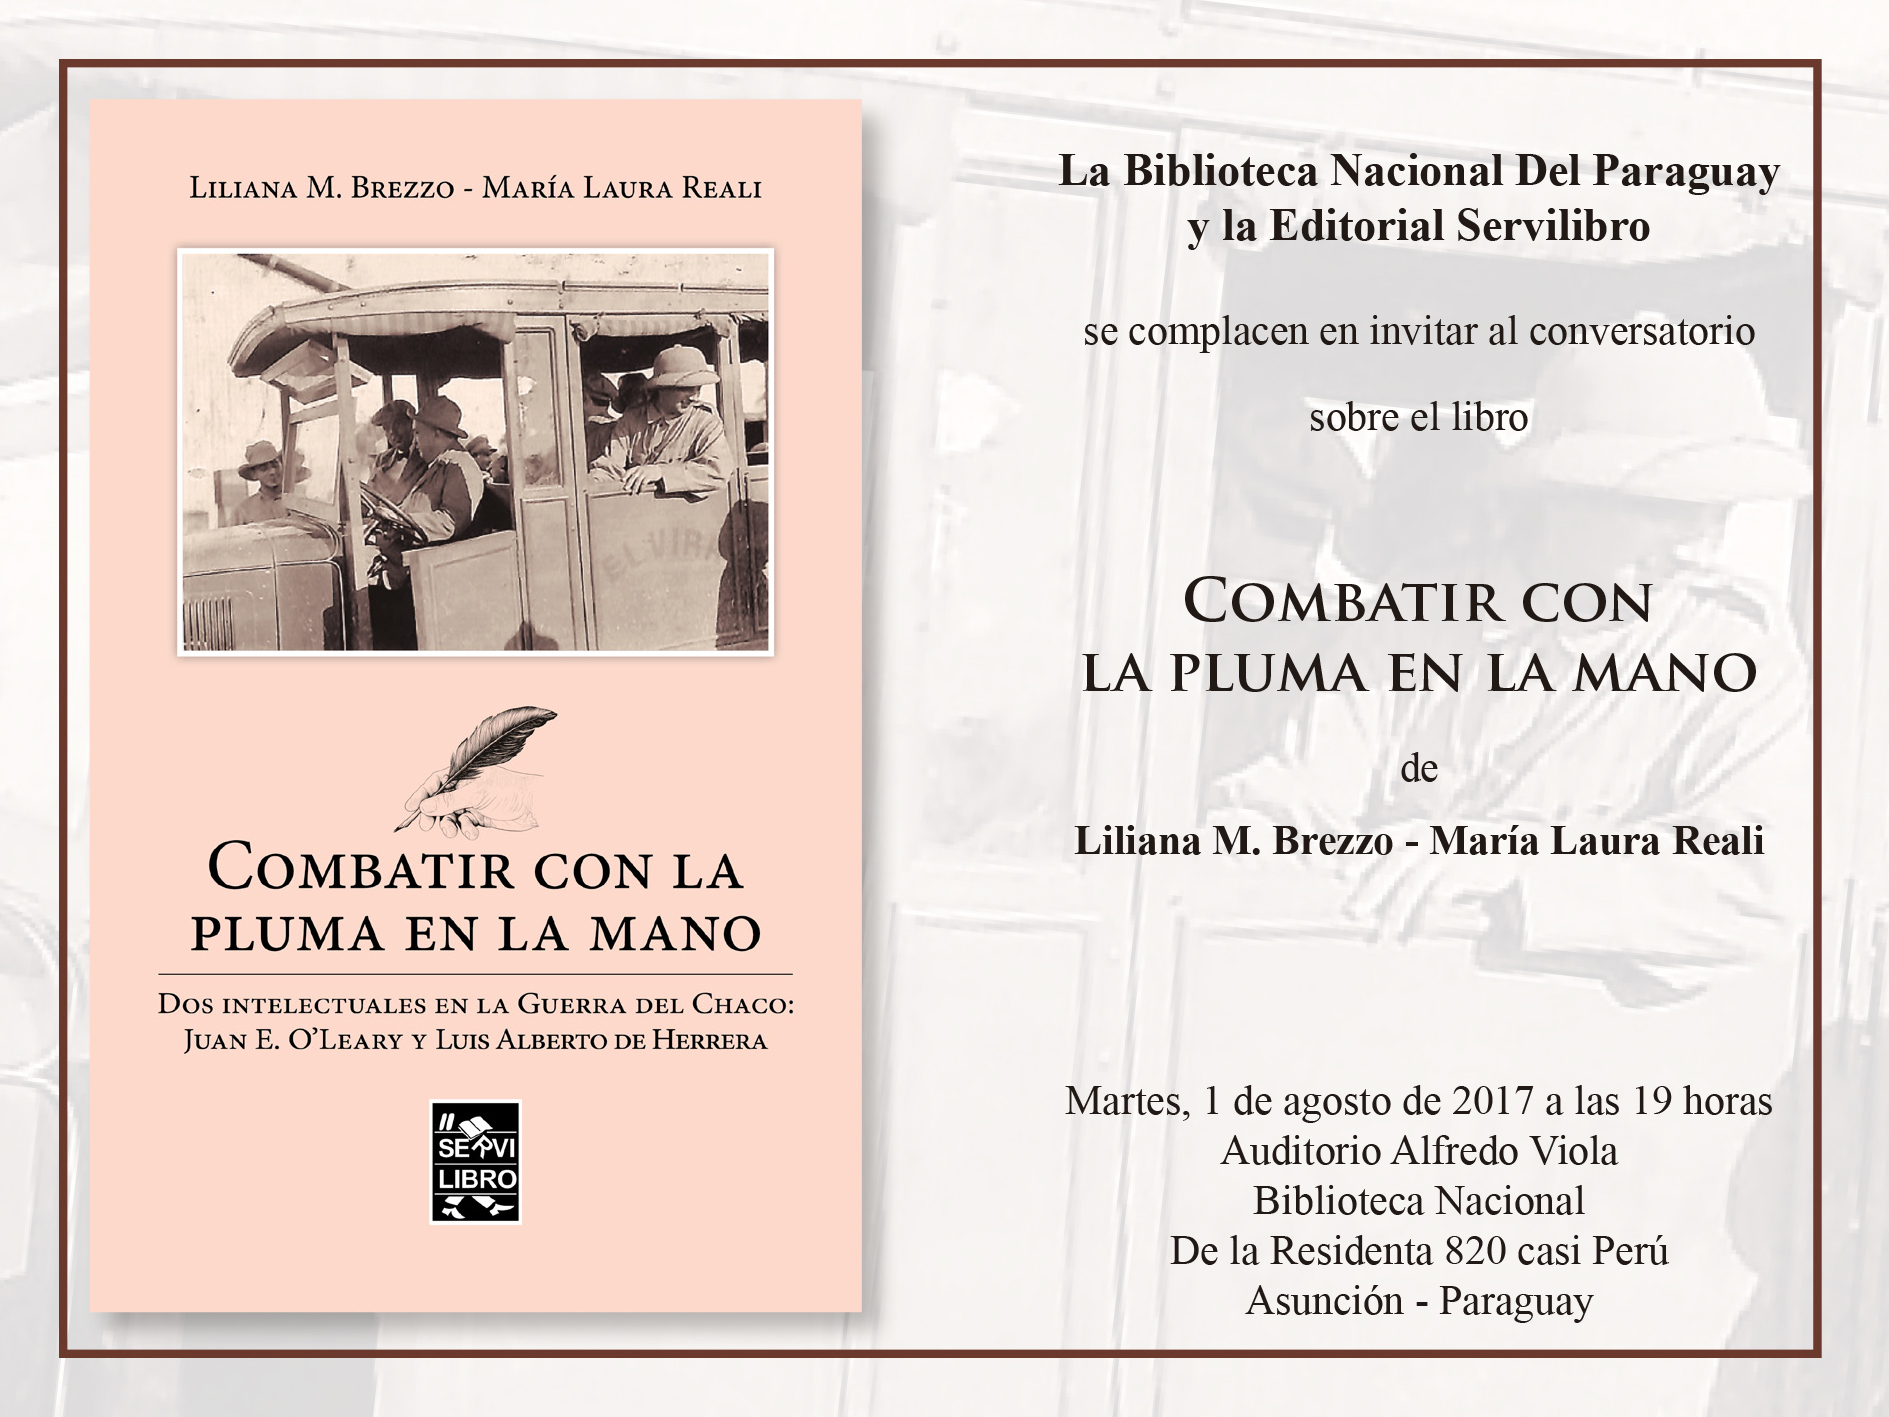 Libro “Combatir con la pluma en mano” será lanzado en la Biblioteca Nacional imagen